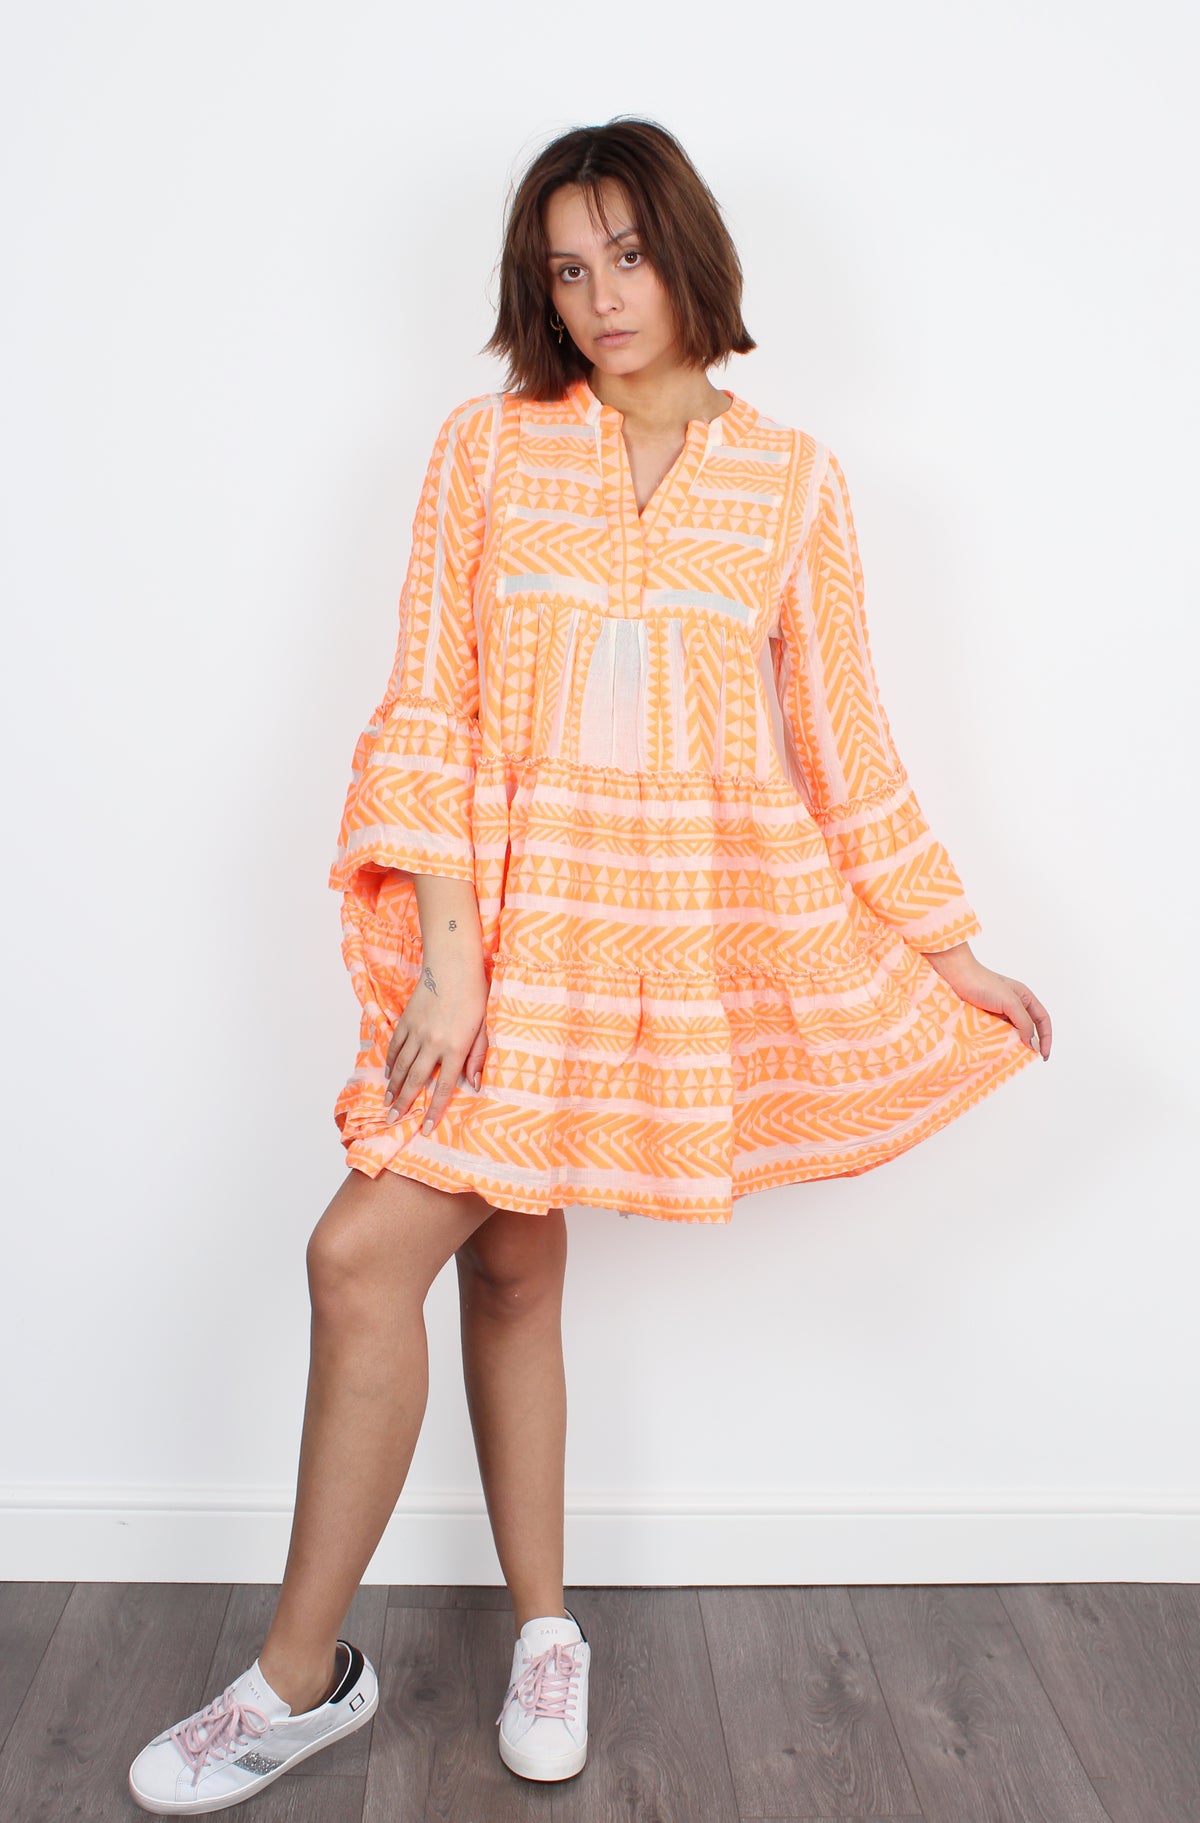 Ella Dress 193 in Neon Orange and Off White